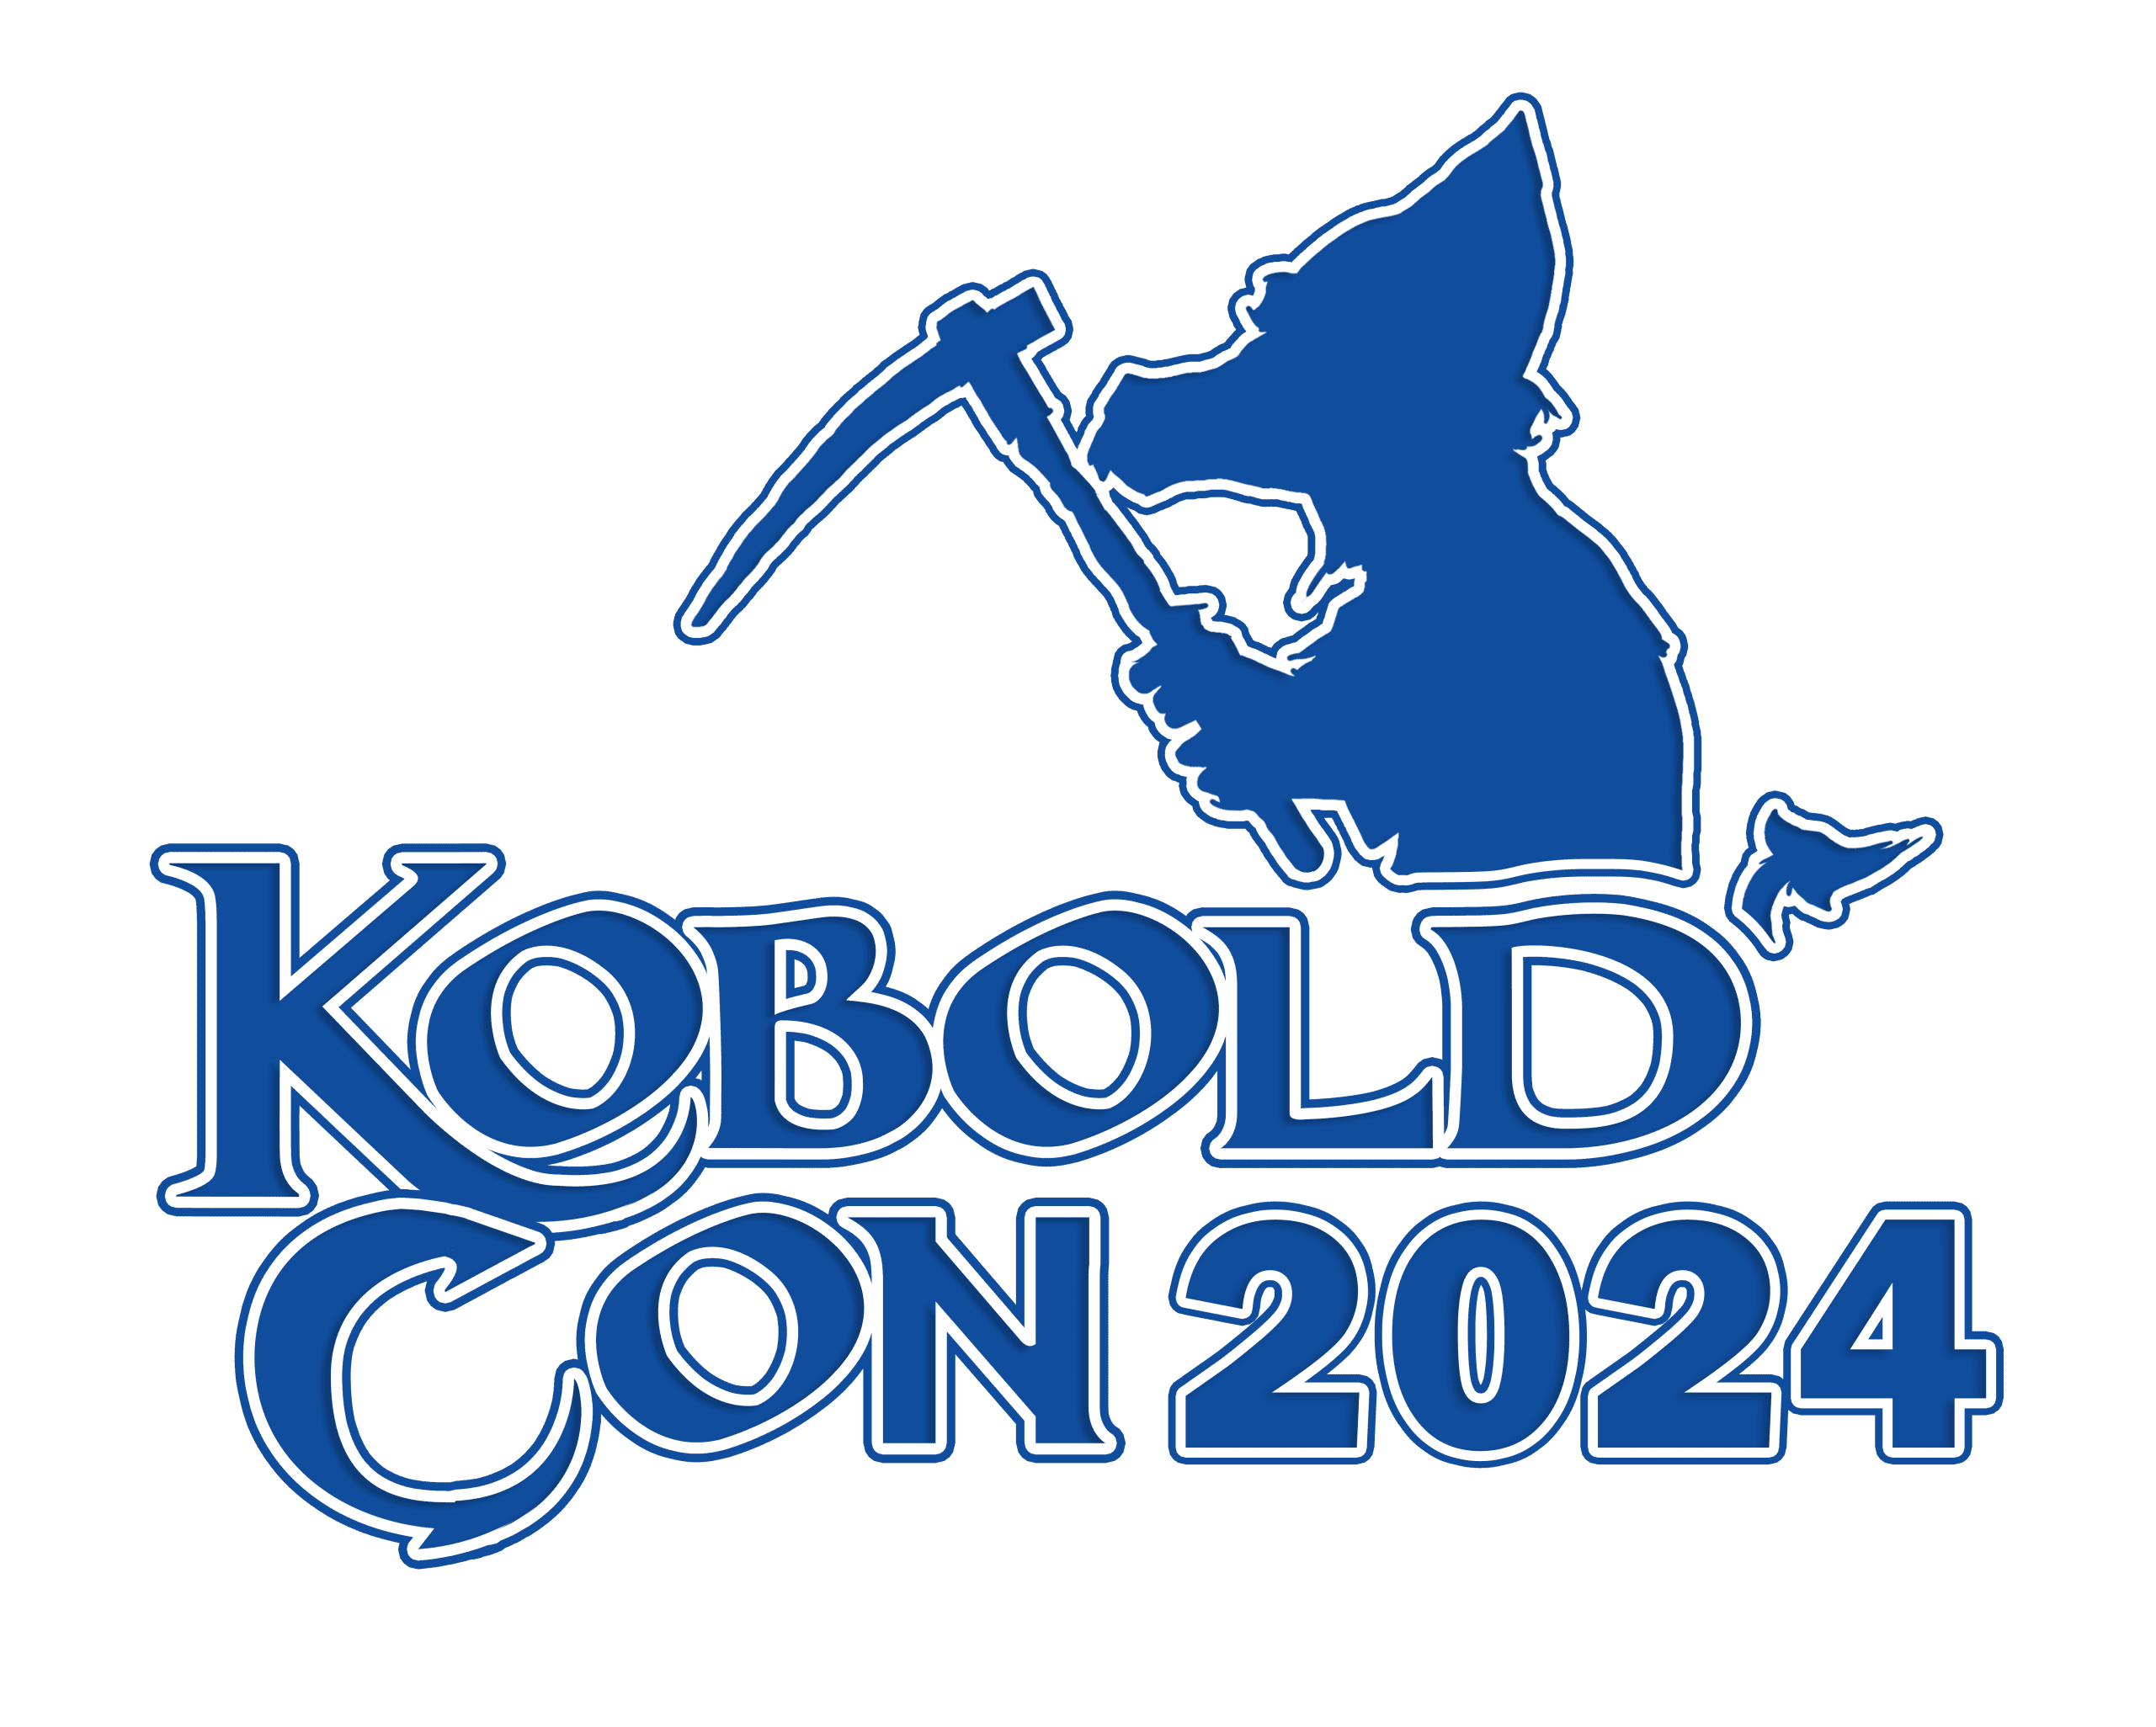 The Kobold Con 2024 logo